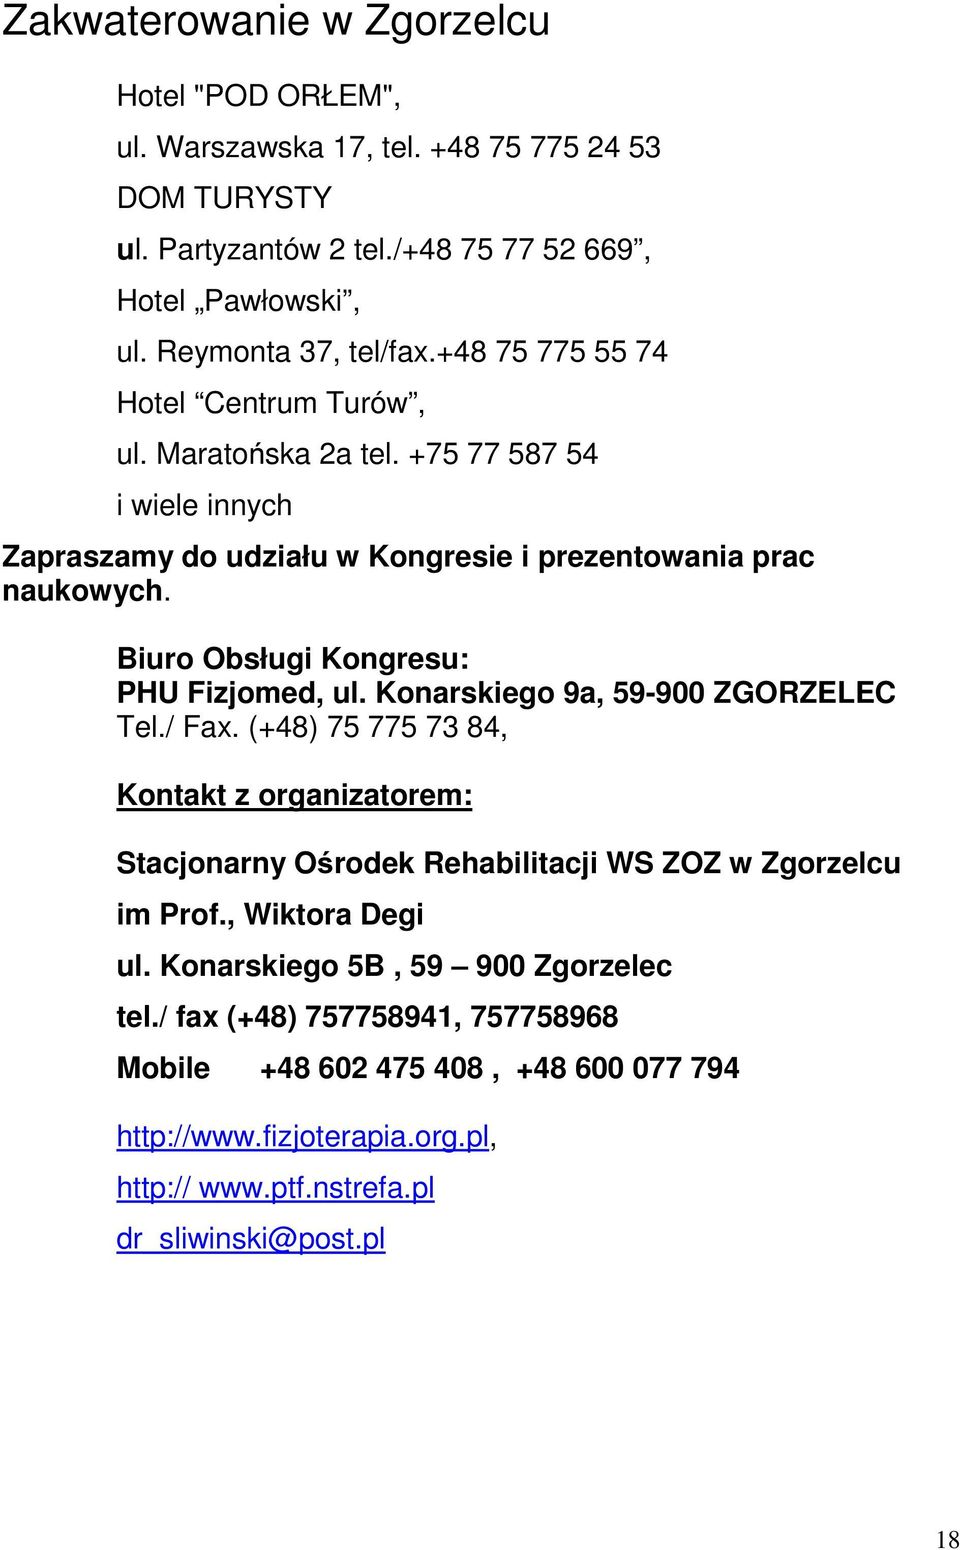 Biuro Obsługi Kongresu: PHU Fizjomed, ul. Konarskiego 9a, 59-900 ZGORZELEC Tel./ Fax.